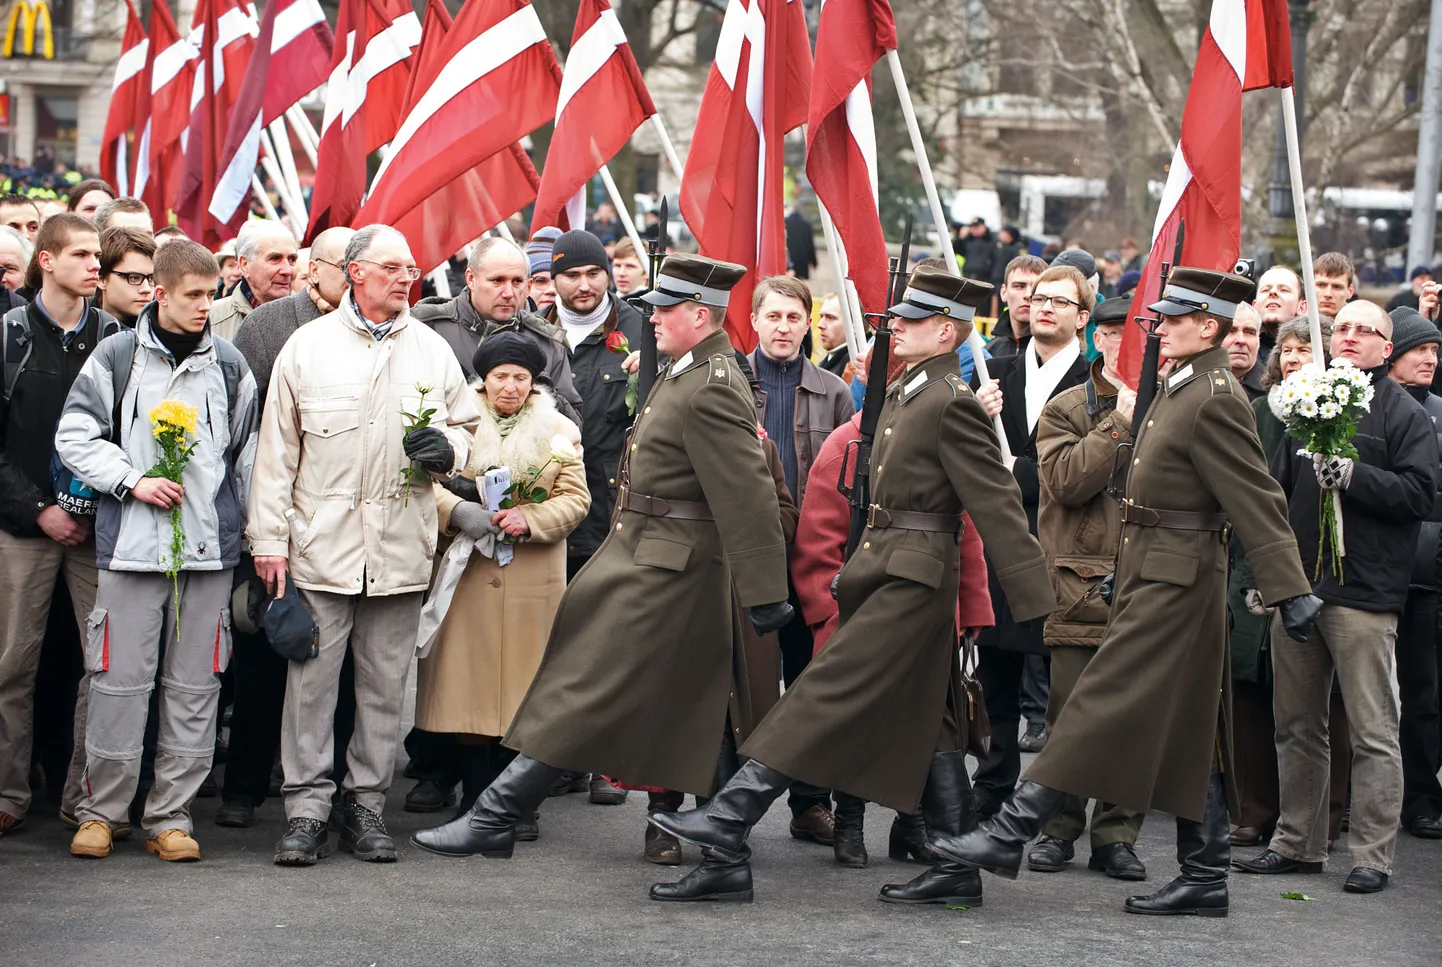 Солдаты латвийской армии.
Иллюстративное фото.